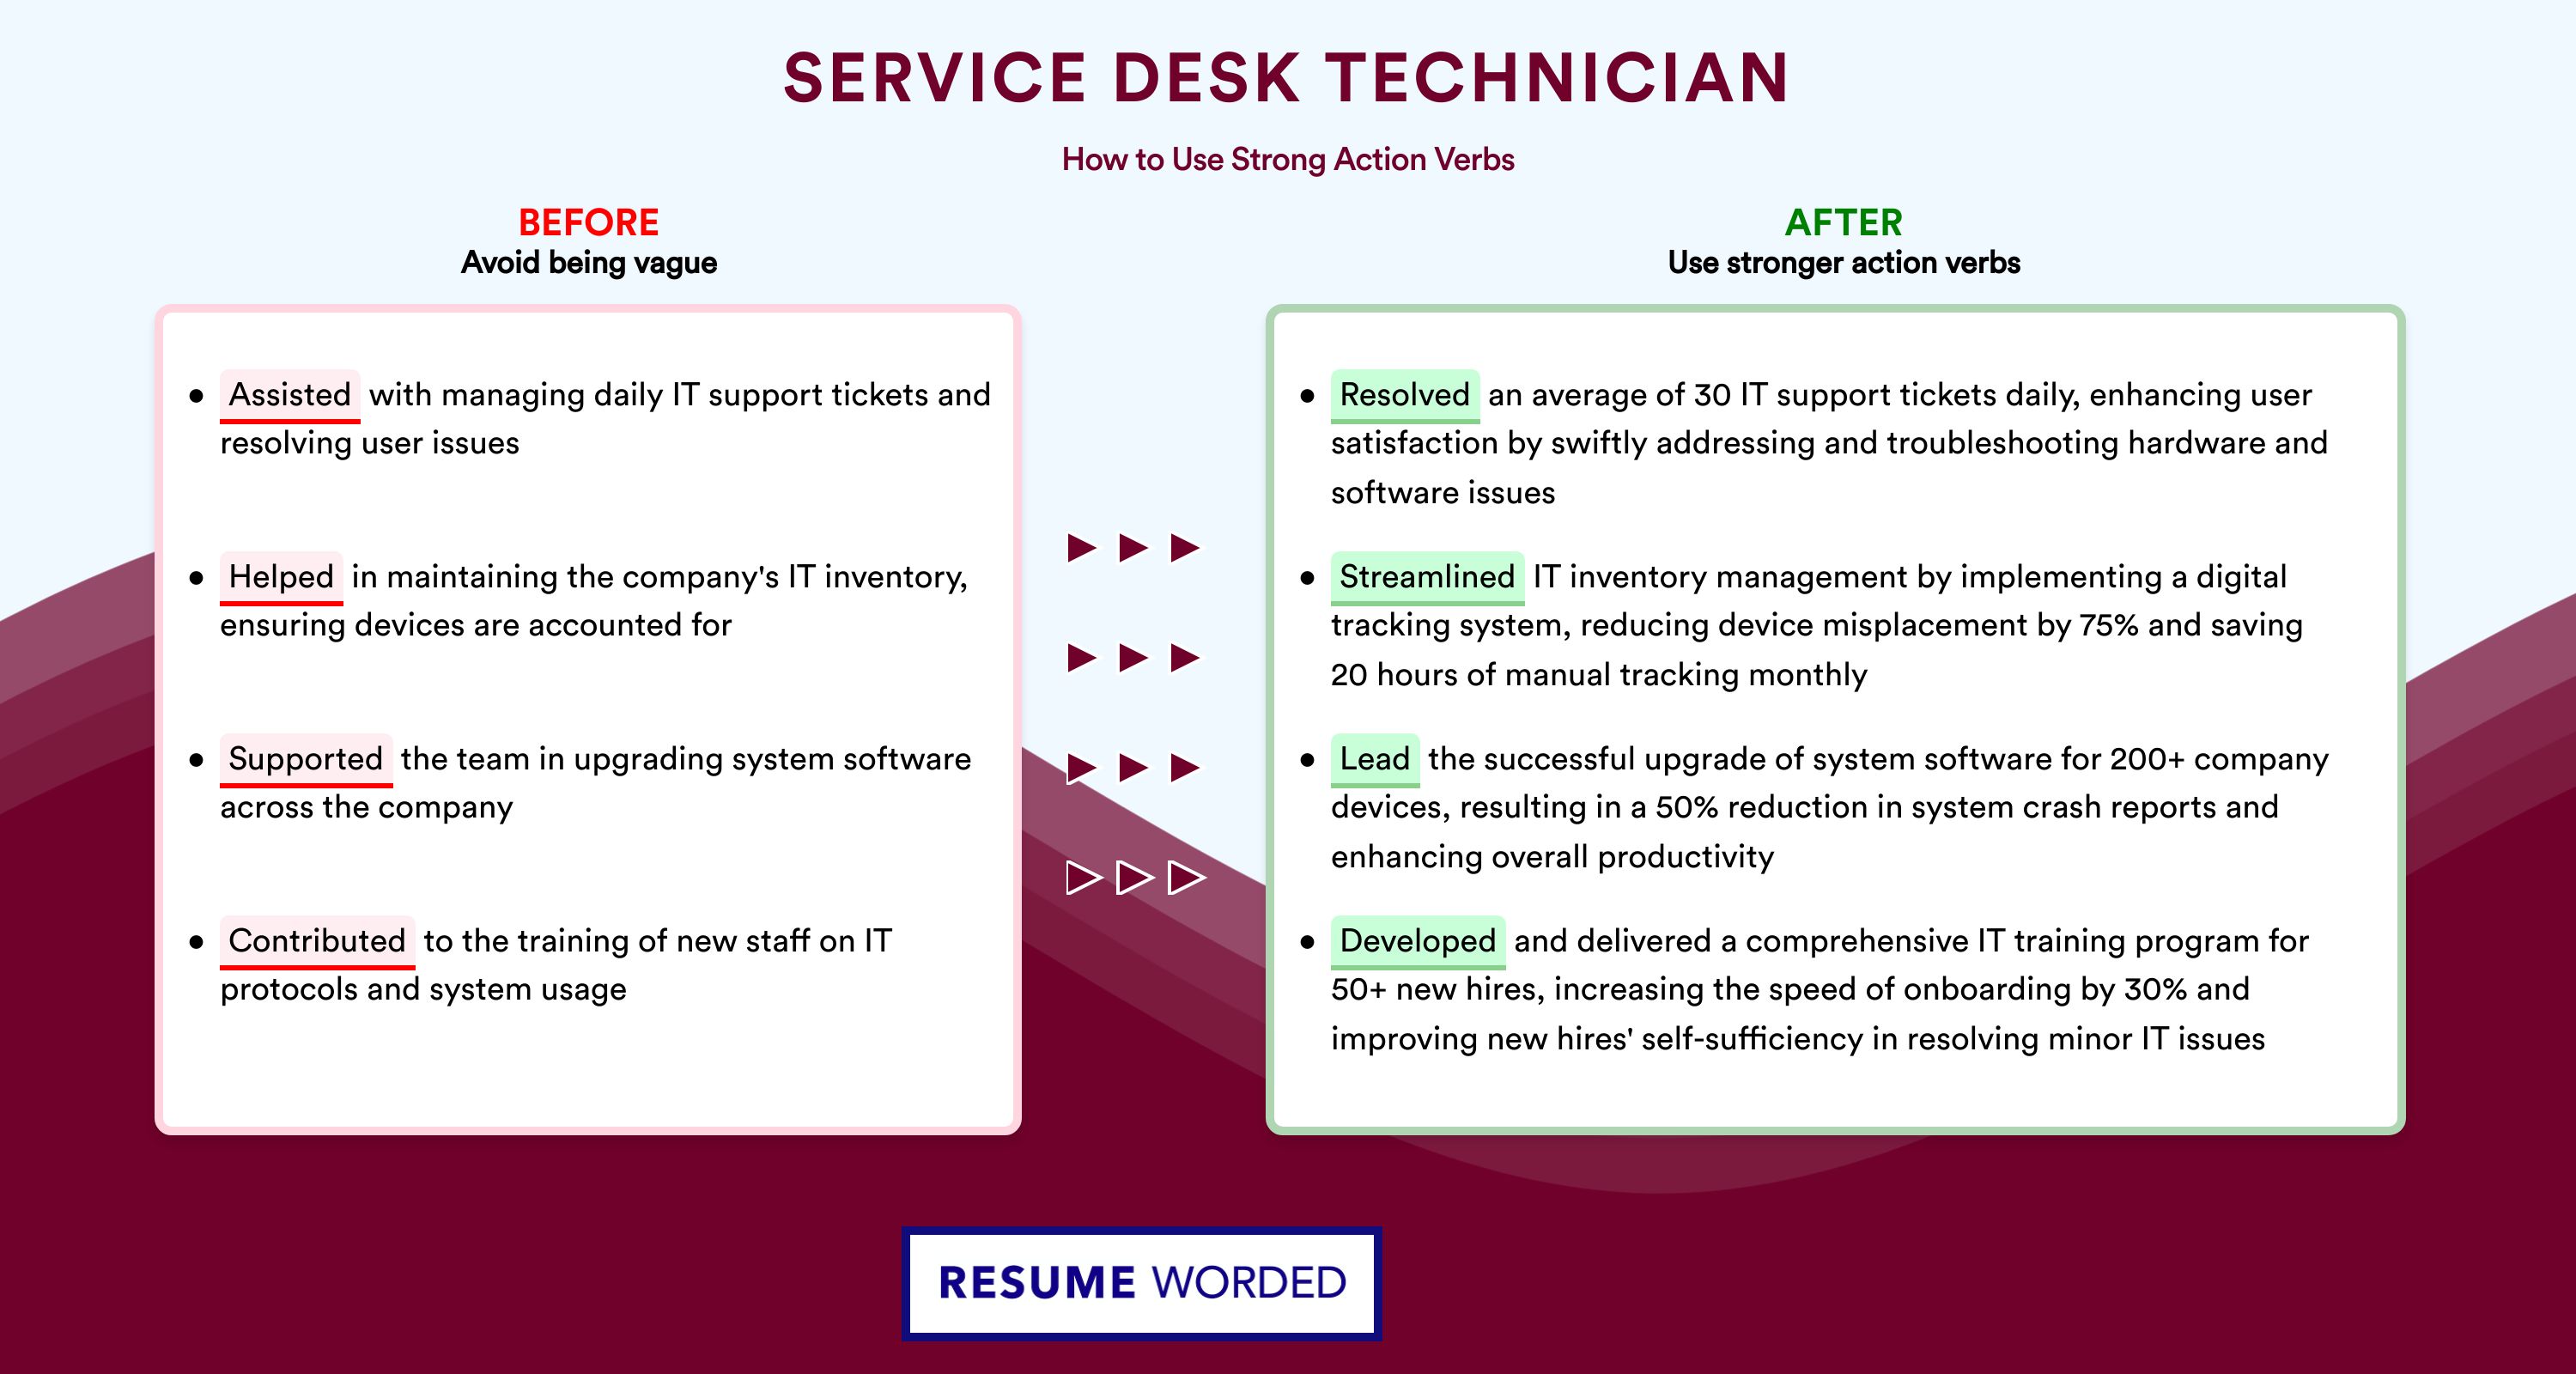 Action Verbs for Service Desk Technician